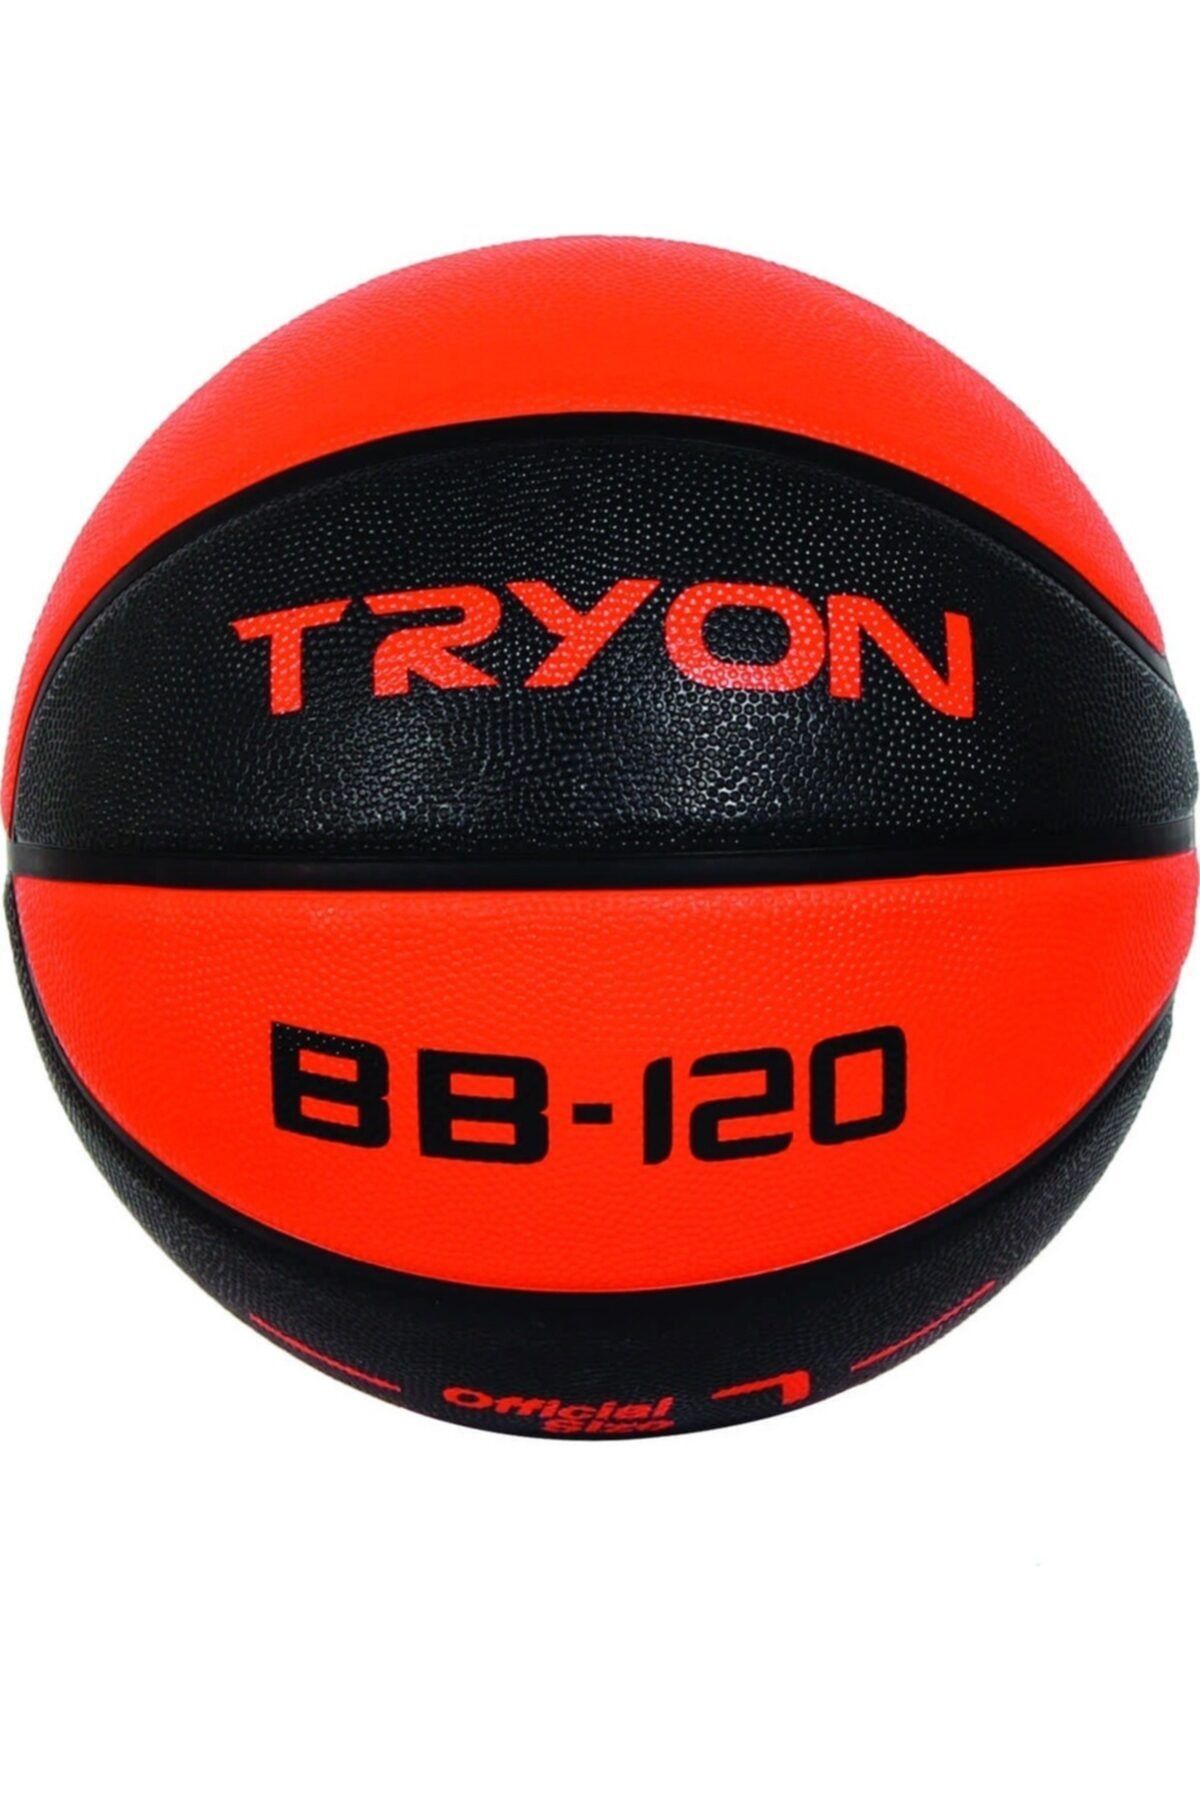 TRYON 7 No Unisex Basketbol Top Turuncu Siyah Bb-120